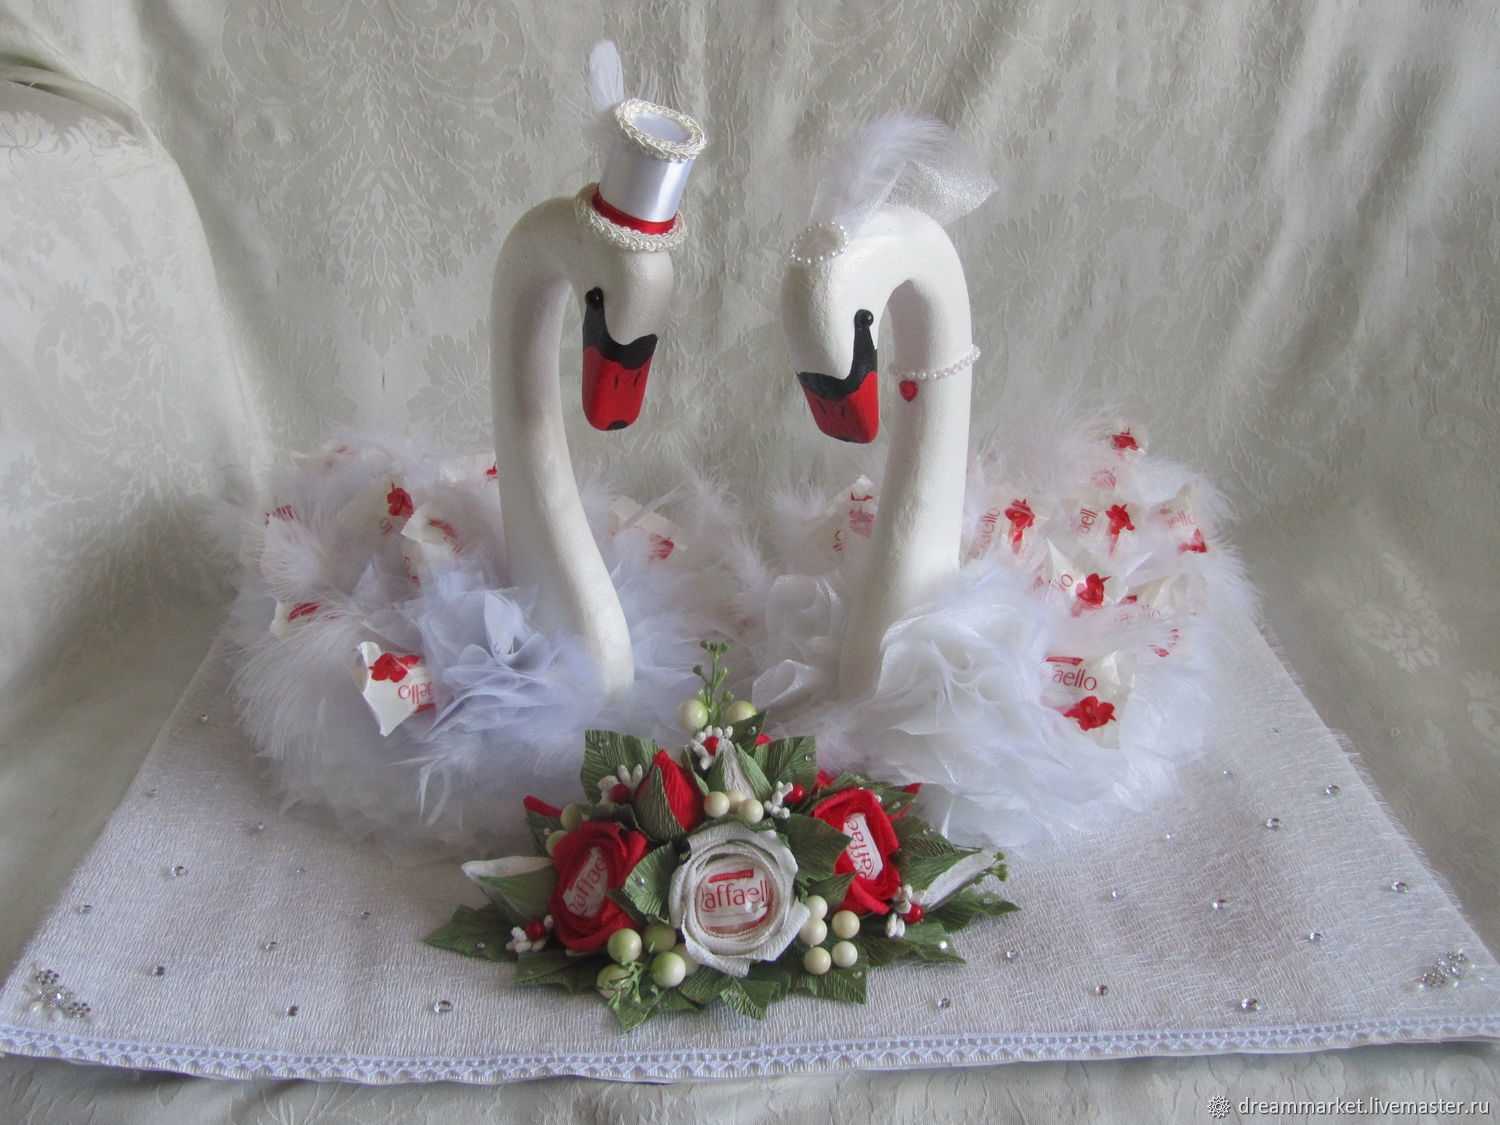 Подарок верности. Подарок для молодоженов. Торт «лебеди». Фигурки лебедей на свадьбу. Свадебный торт с лебедями.